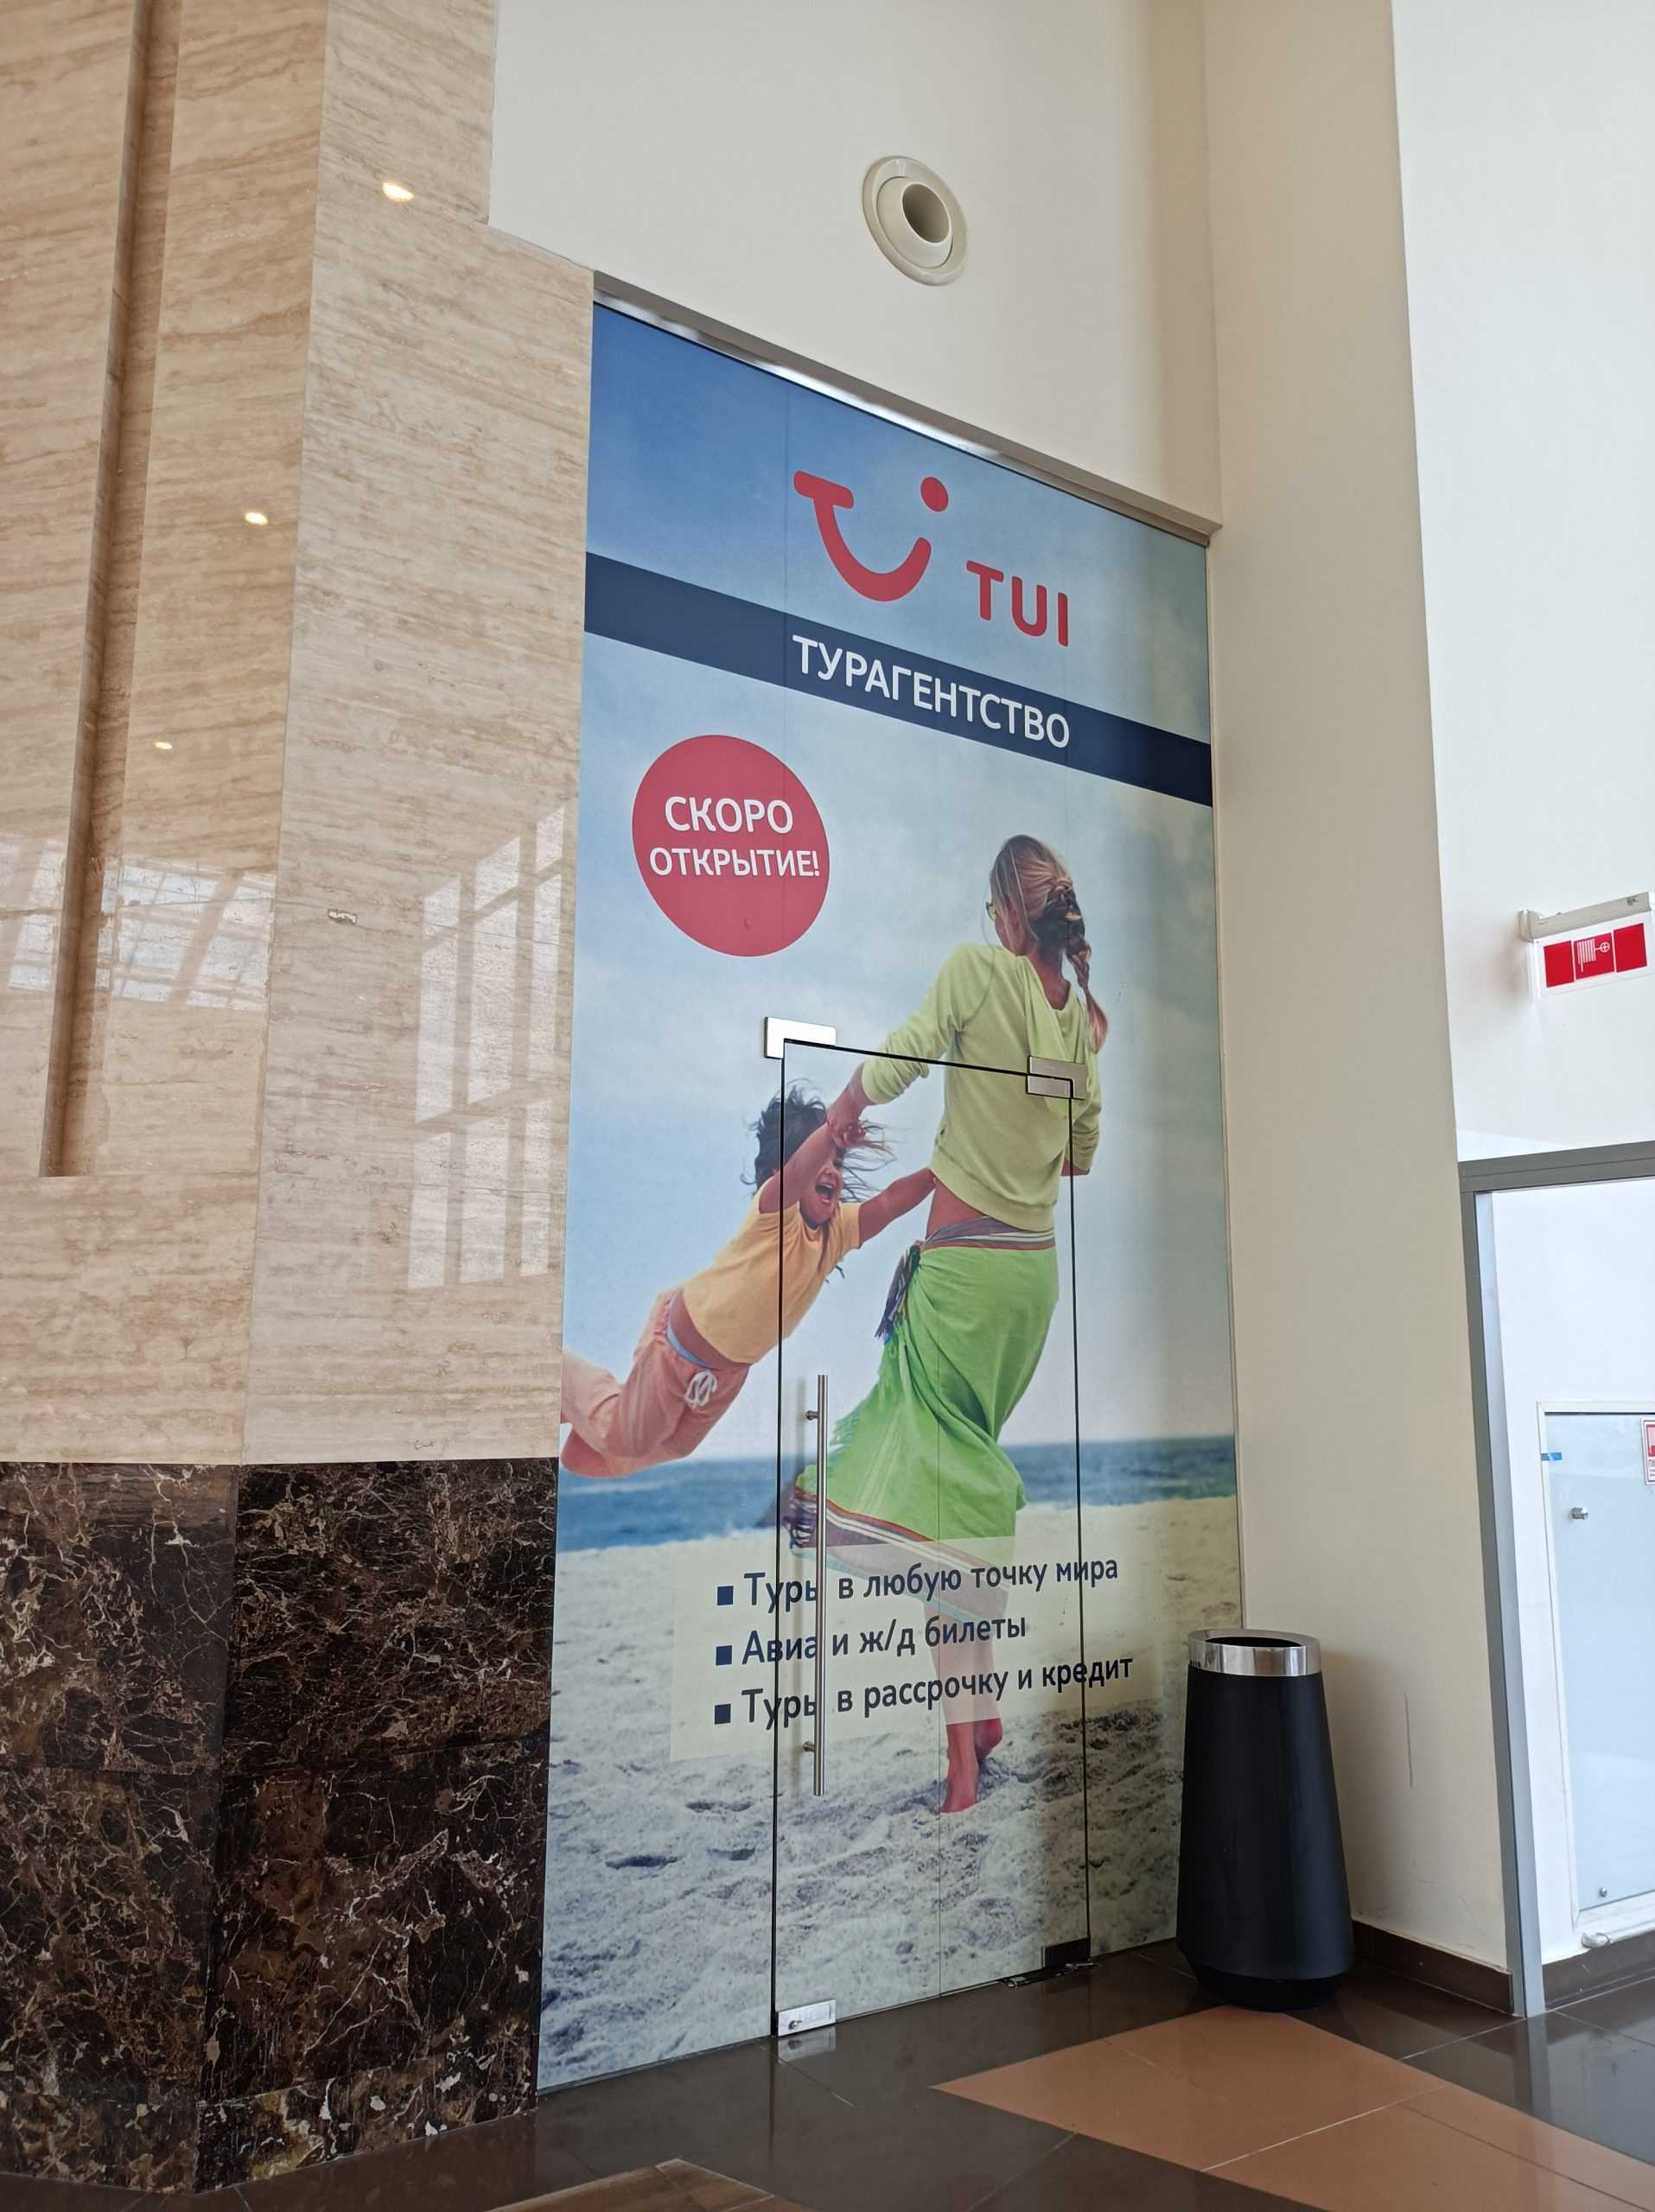 сеть туристических агентств TUI фото 1